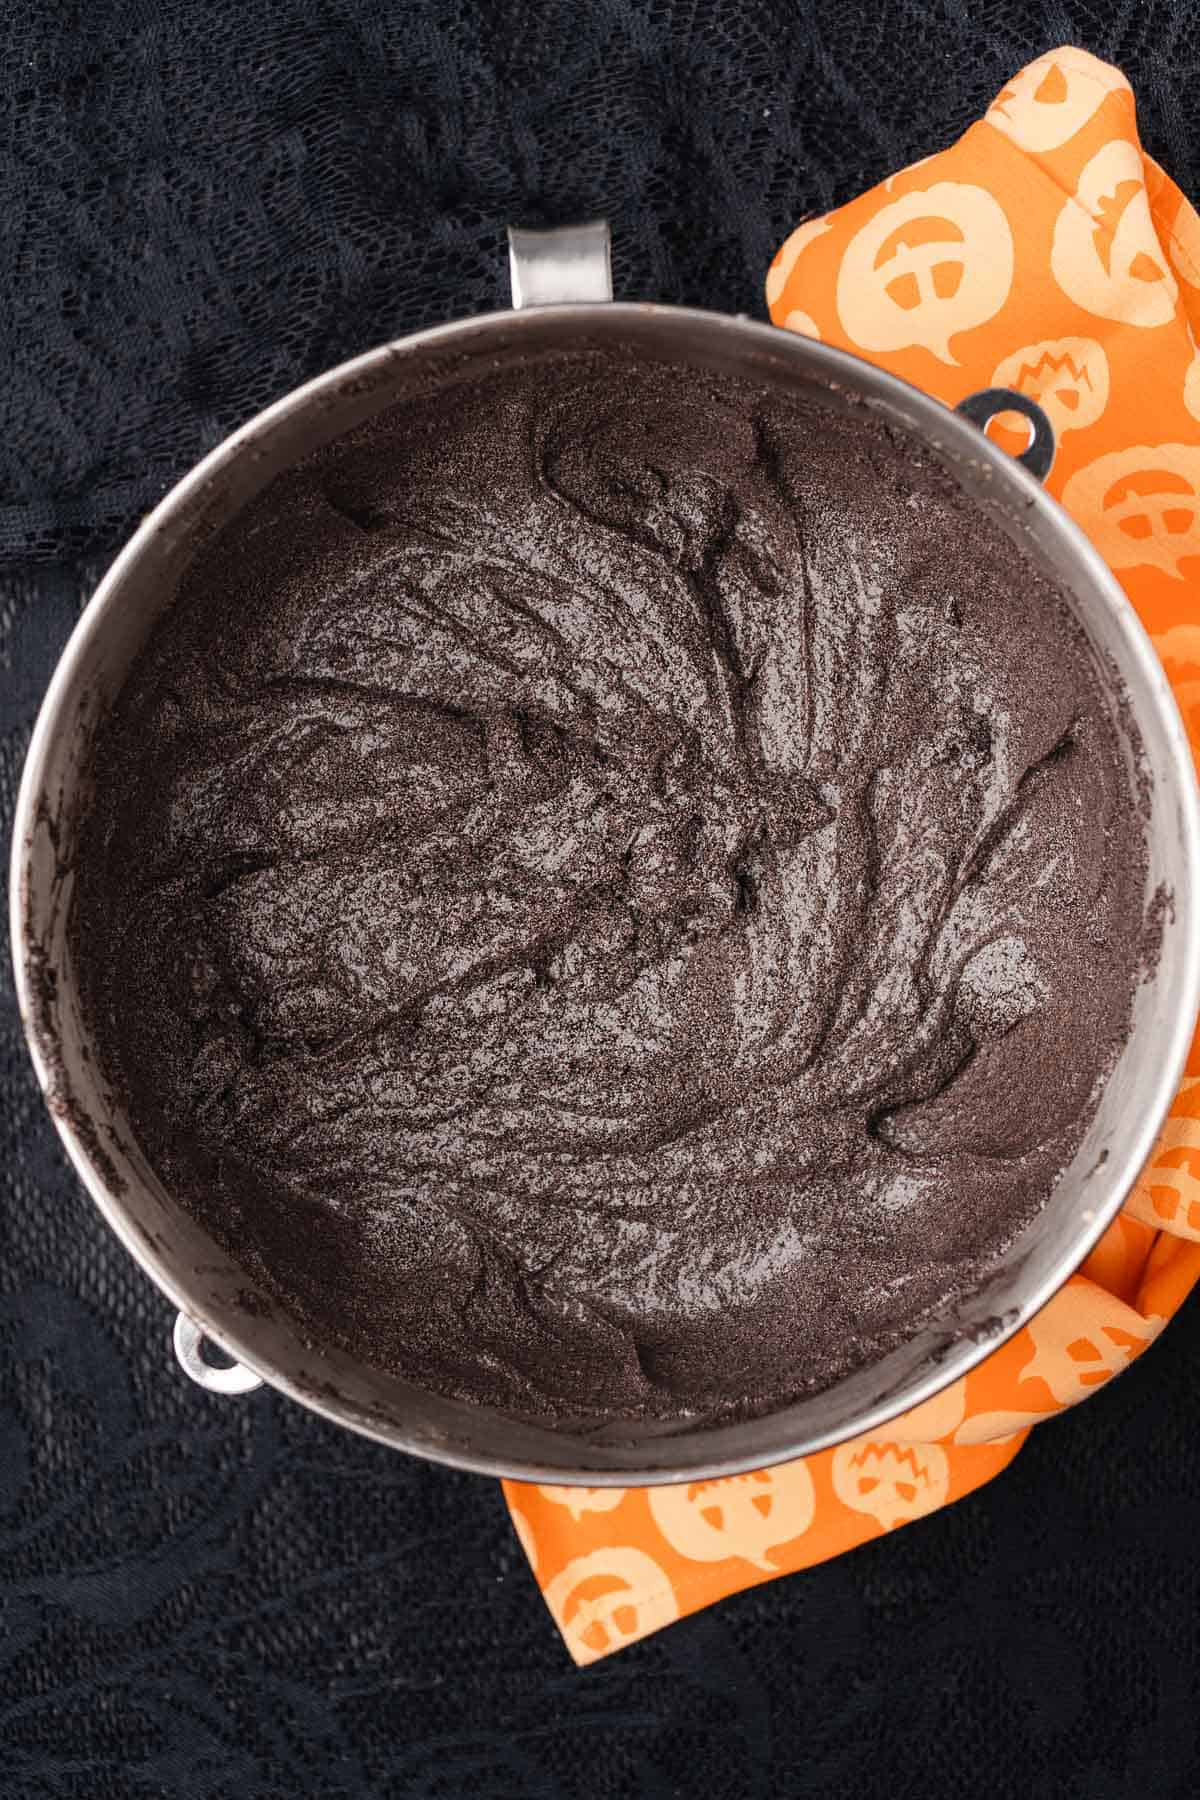 black velvet cake batter in a bowl